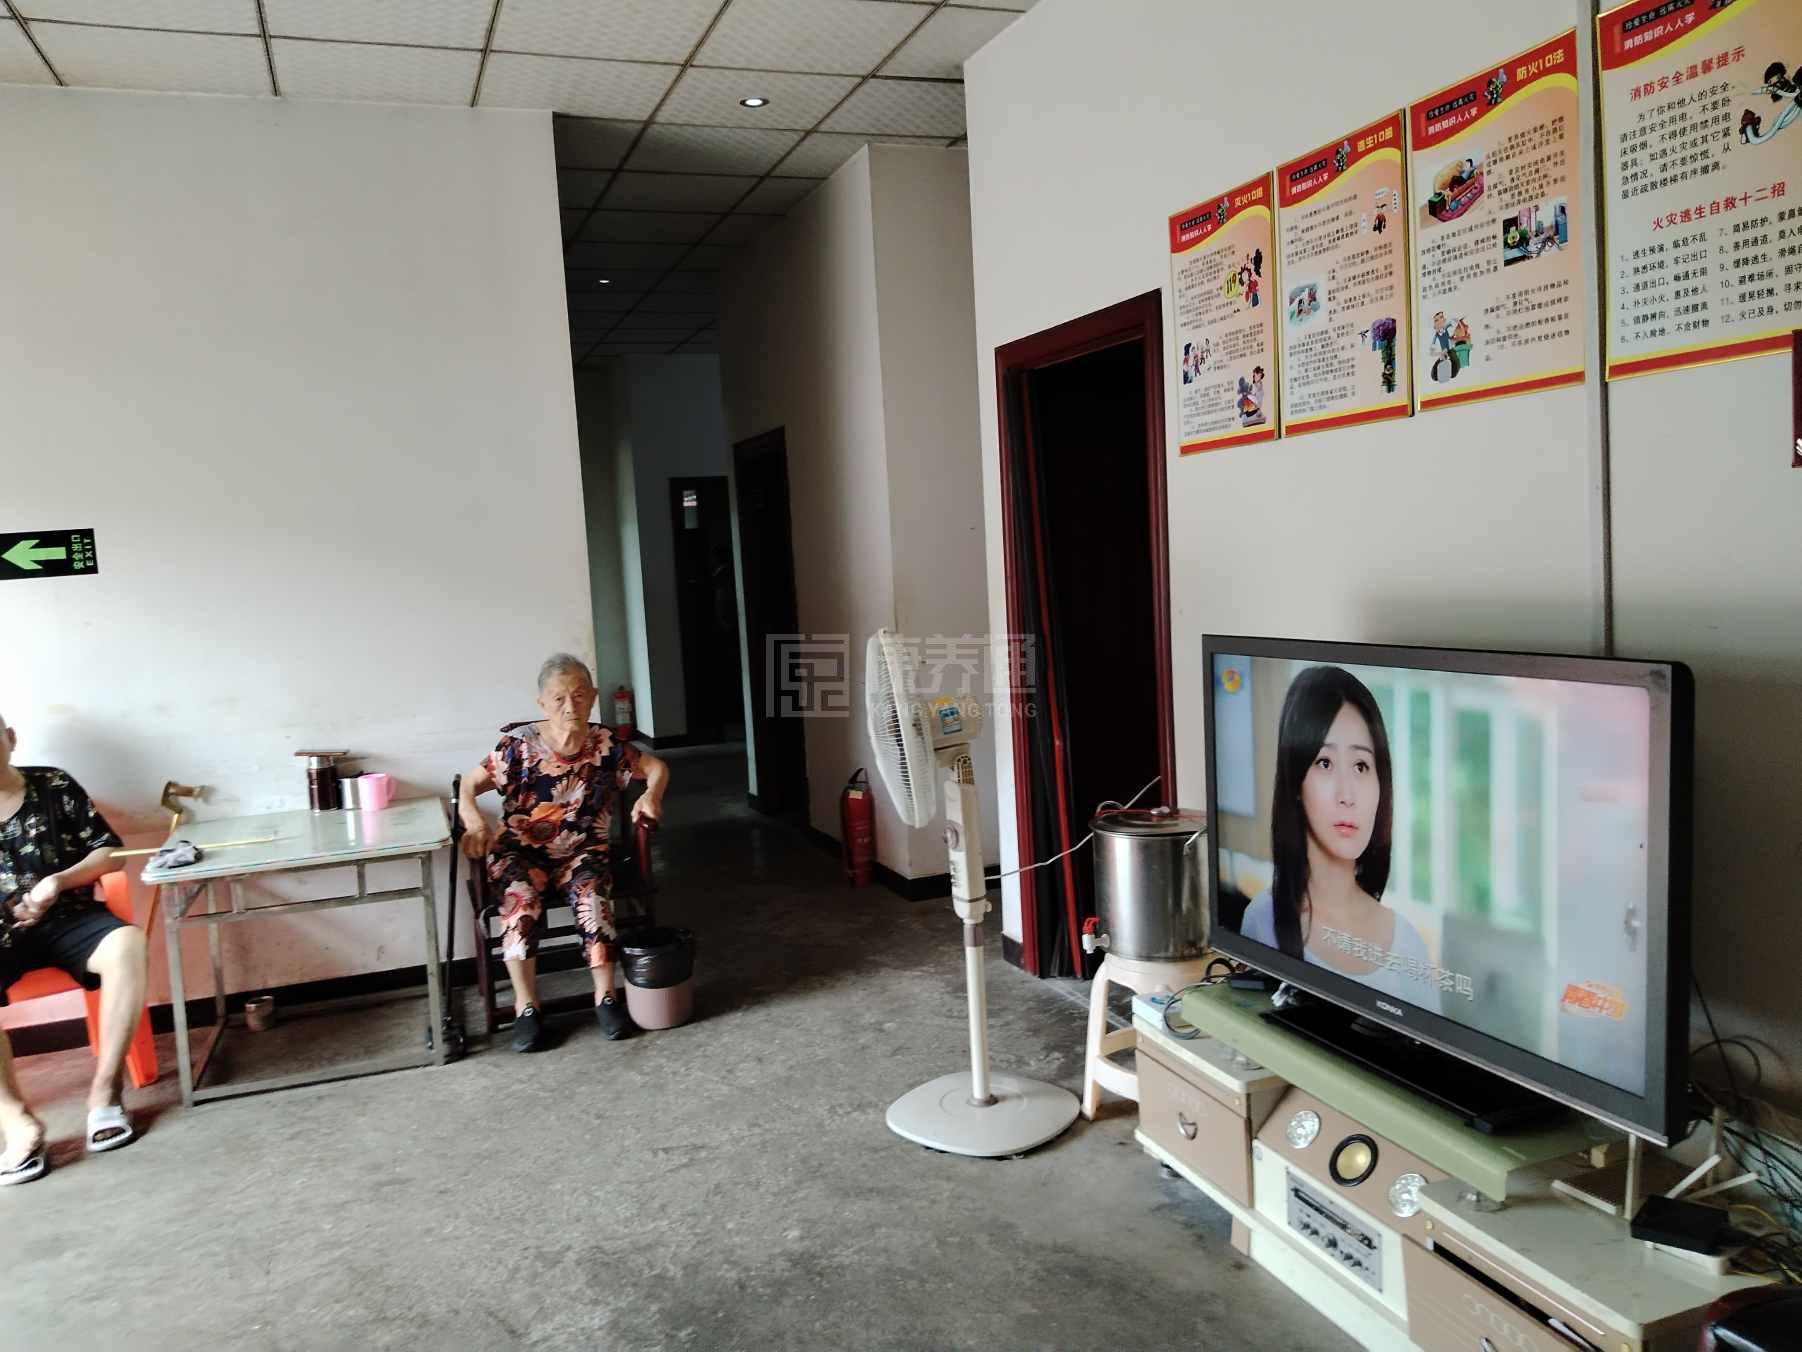 桃江县仁爱老年养护中心服务项目图4让长者主动而自立地生活